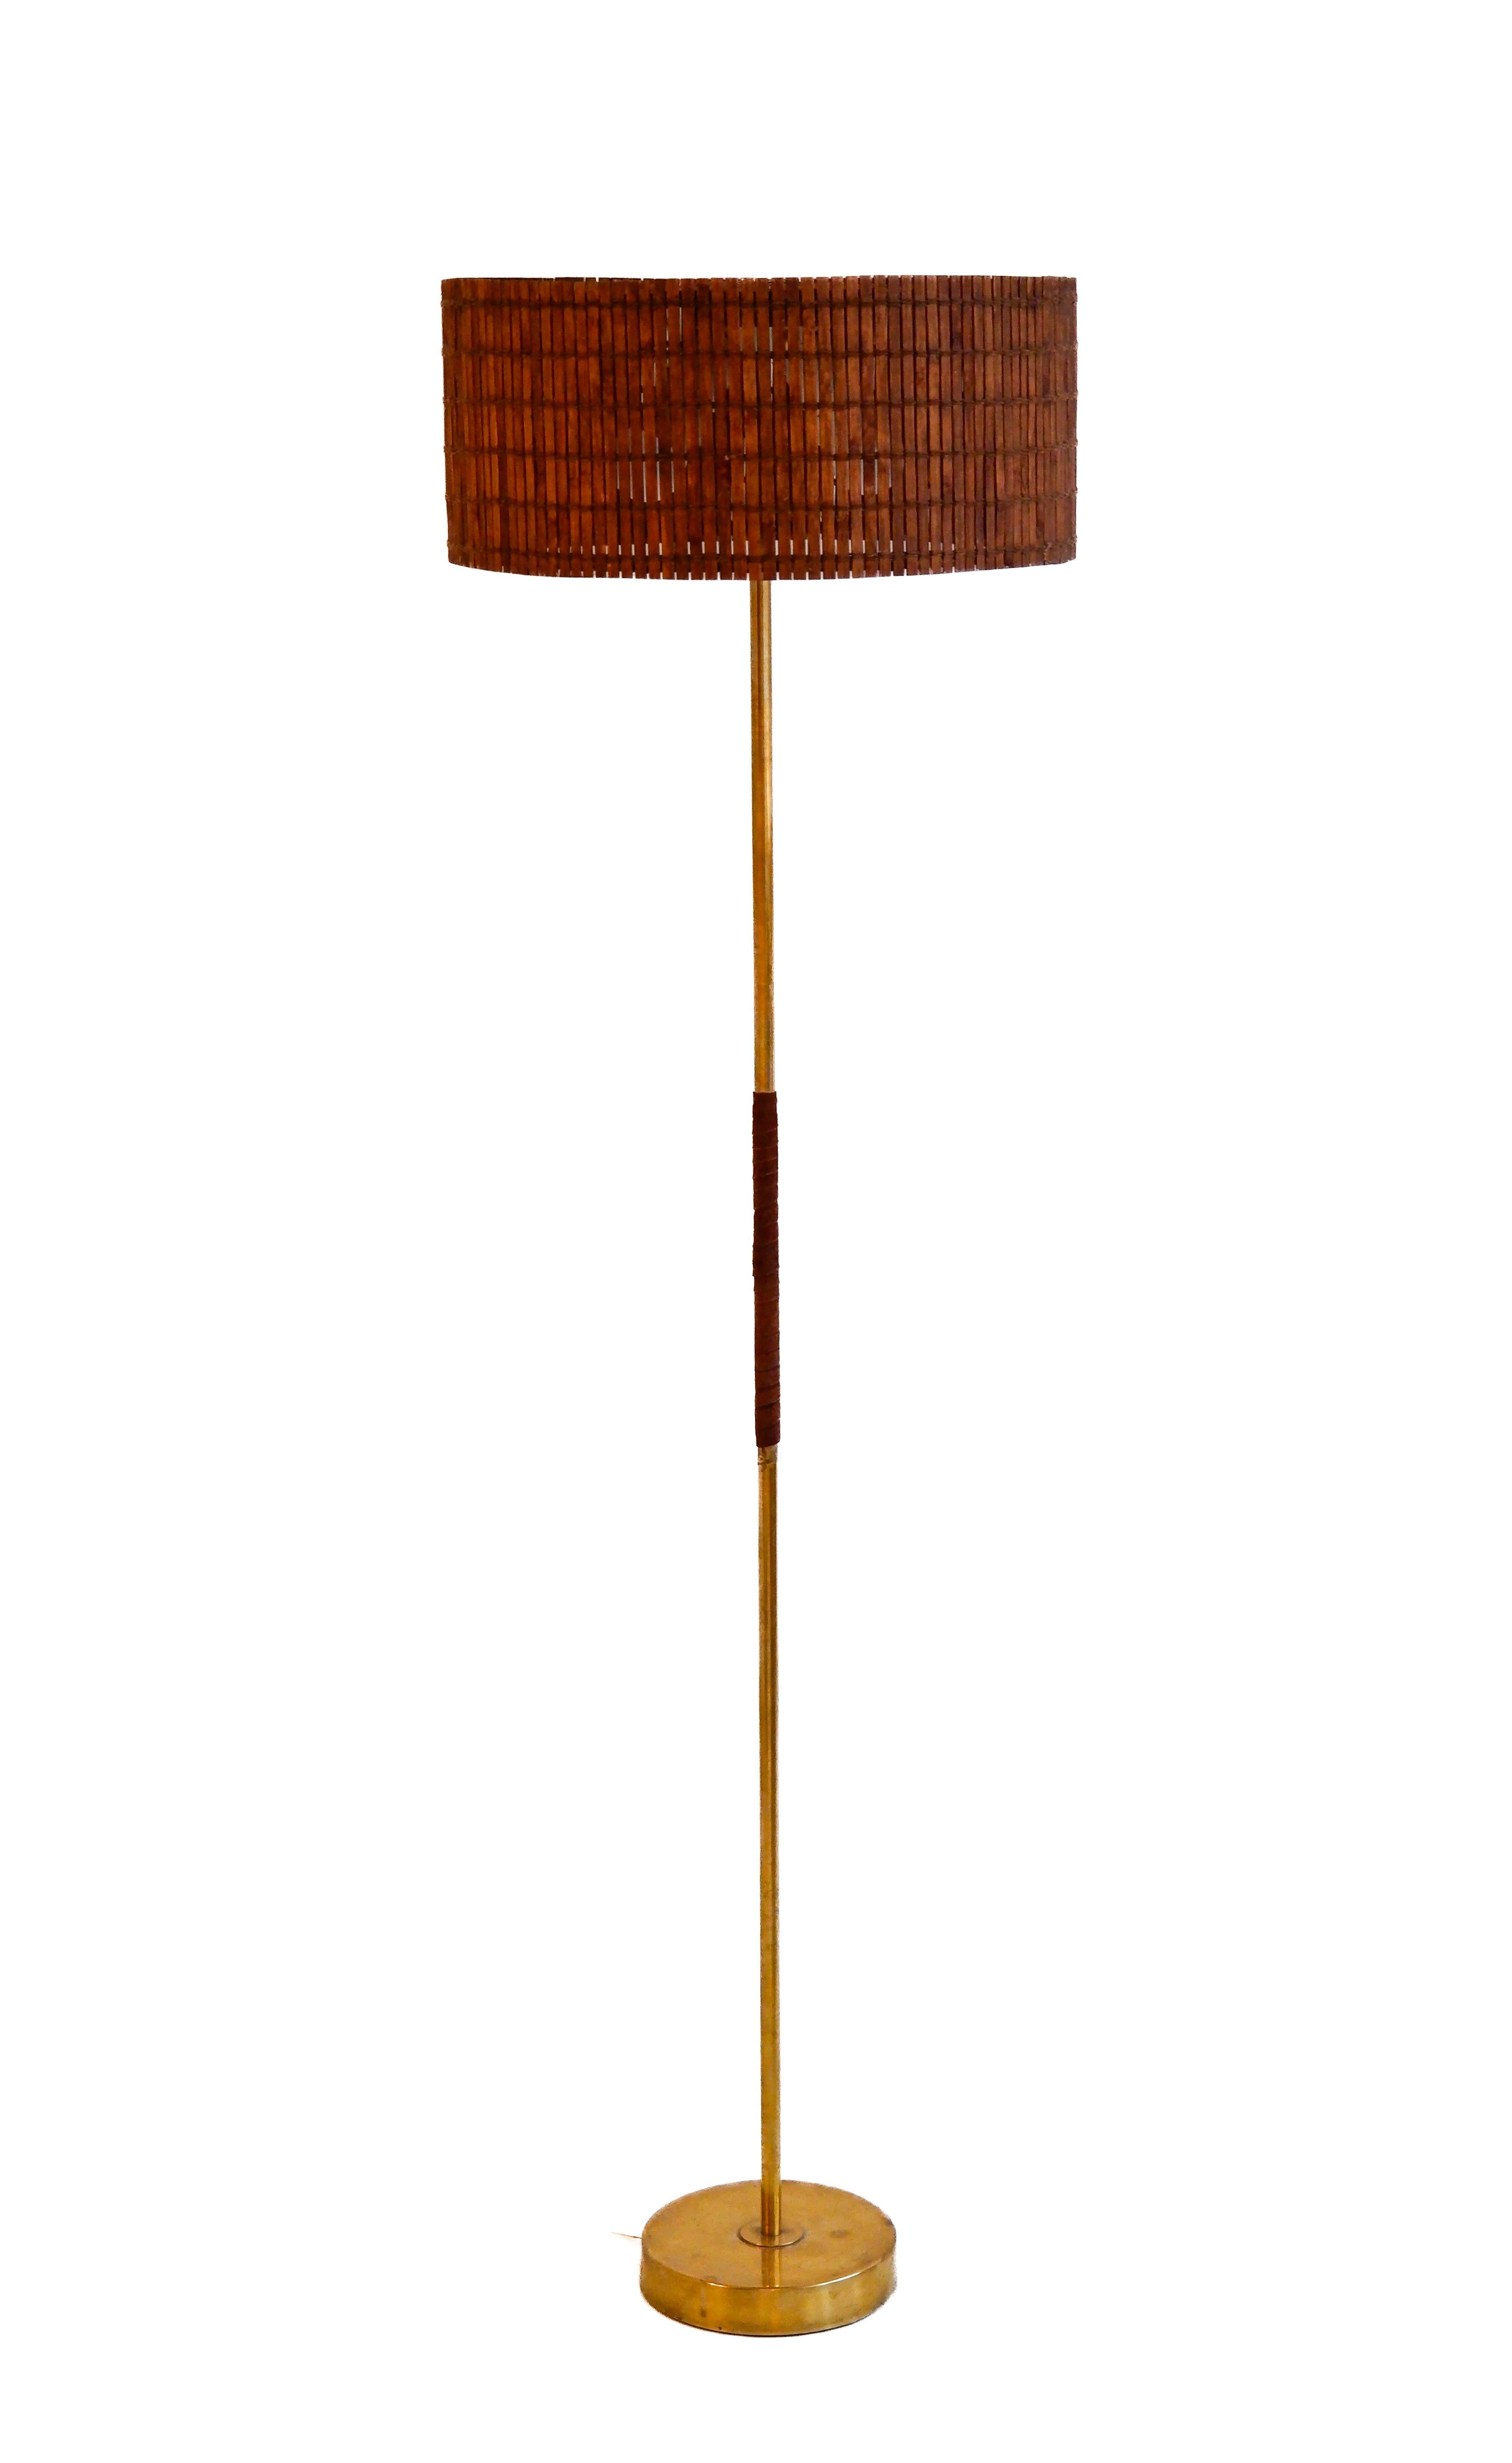 Finnische Vintage-Stehleuchte, entworfen und hergestellt von der Leuchtenfabrik Presenta in den 60er Jahren. Die Lampe ist aus massivem Messing gefertigt, hat ein Lederdetail am Kern und einen Rattanschirm. Guter Zustand des Overhalls ! Die Lampe